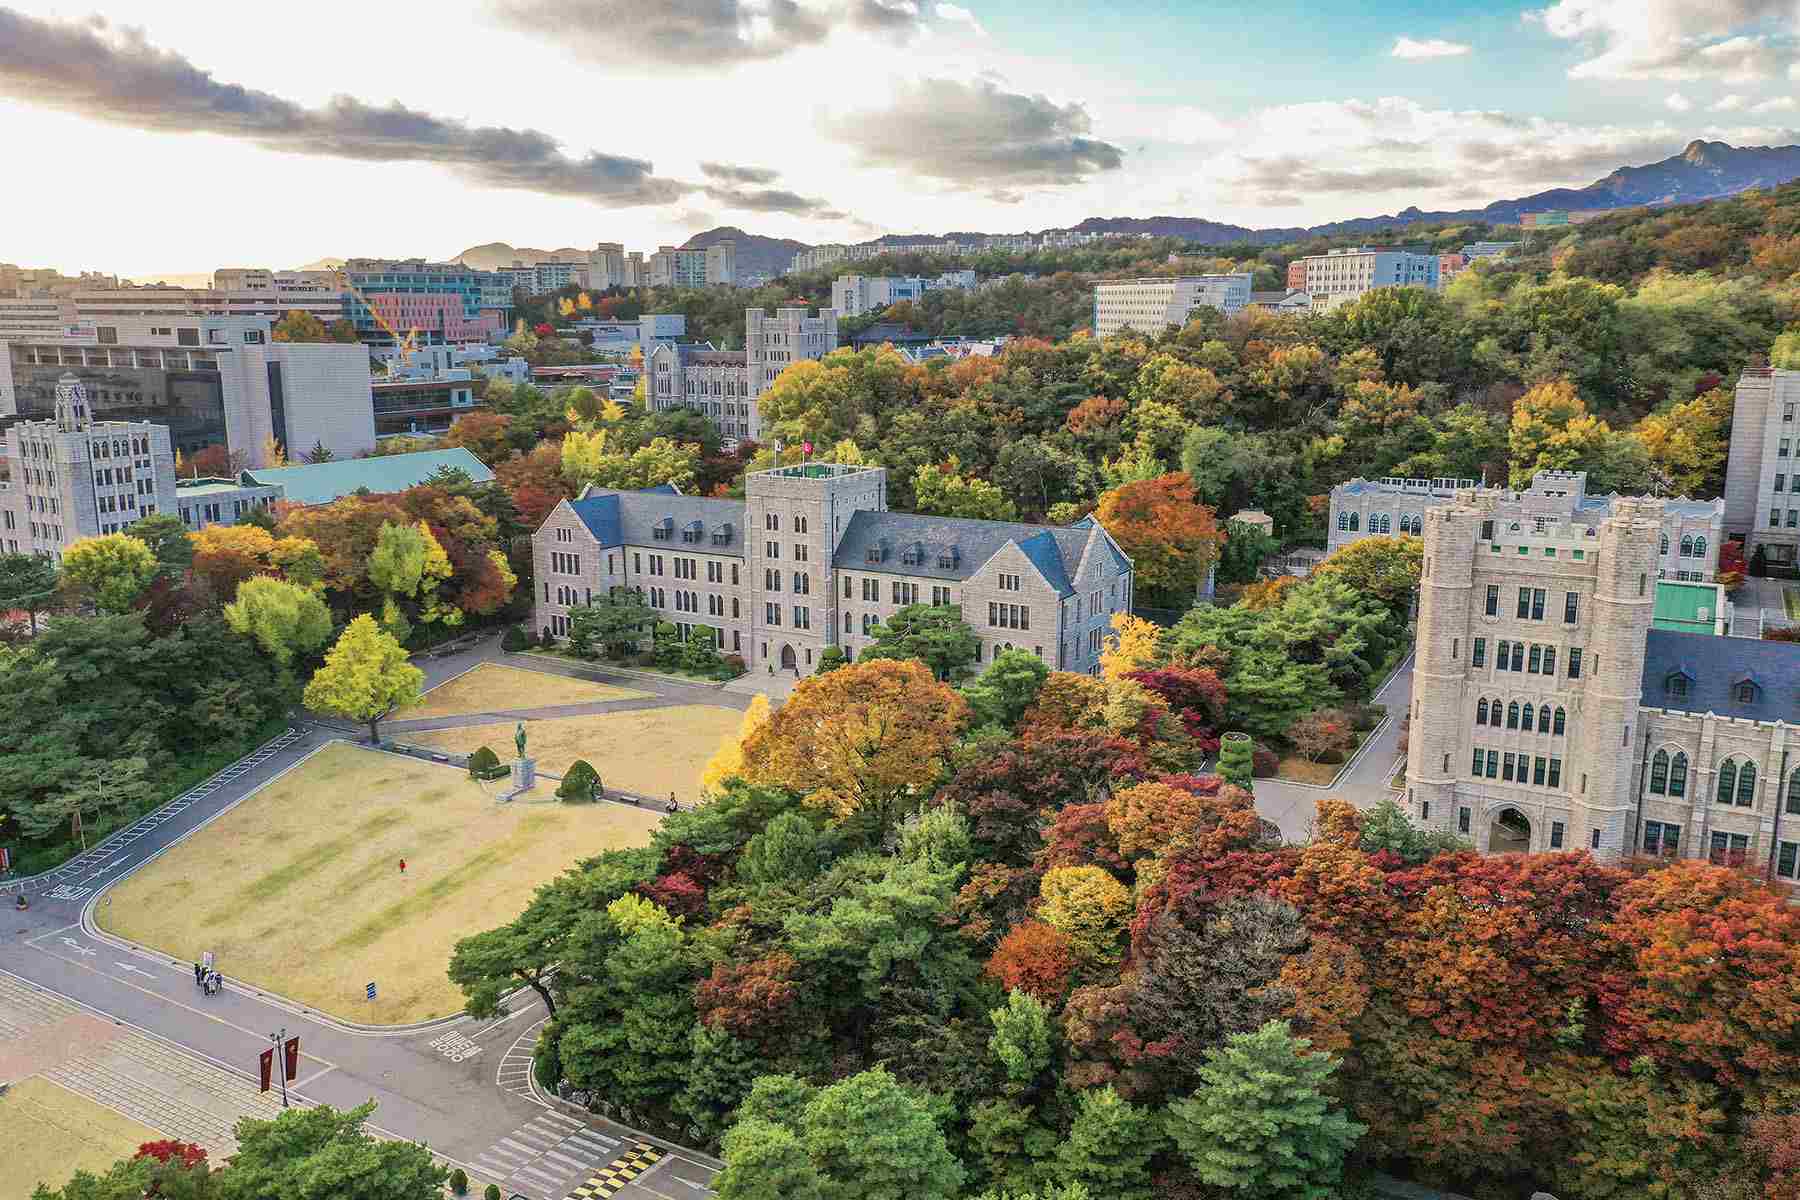 Đại học Korea được thành lập từ năm 1905 và nằm trong top 3 trường đại học SKY